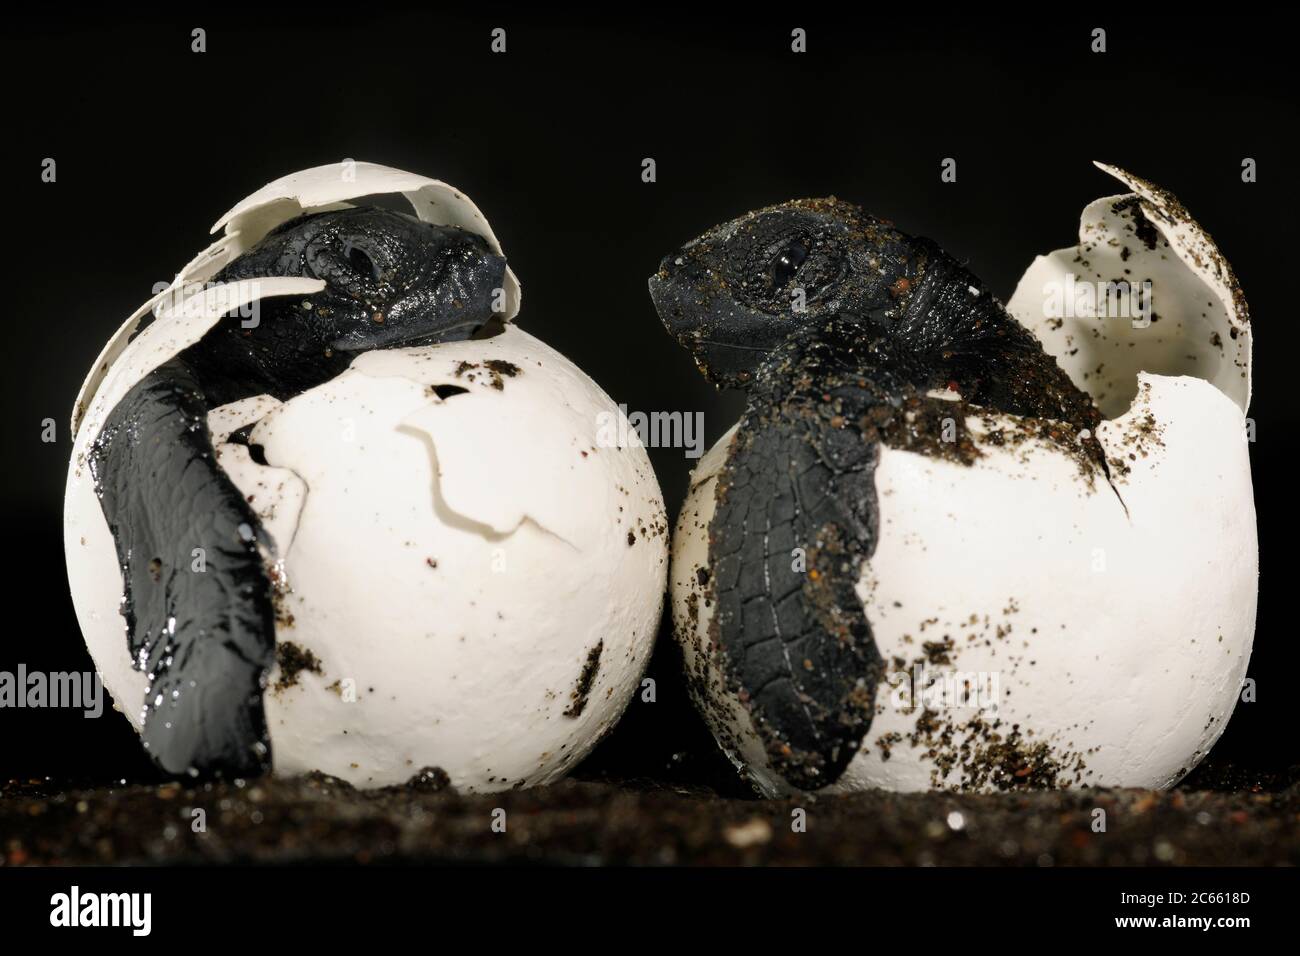 Questi hatchlings di una tartaruga di mare di ridley di oliva (Lepichelys olivacea) dovrebbero essere sepolti e protetti sotto 40 centimetro di sabbia calda, ma un cane domestico li ha scavati fuori alla spiaggia di Ostional in Costa Rica. Ci vogliono quasi due mesi perché un uovo di tartaruga marina si sviluppi in un perfetto piccolo rettile marino. [dimensioni del singolo organismo: 6 cm] Foto Stock